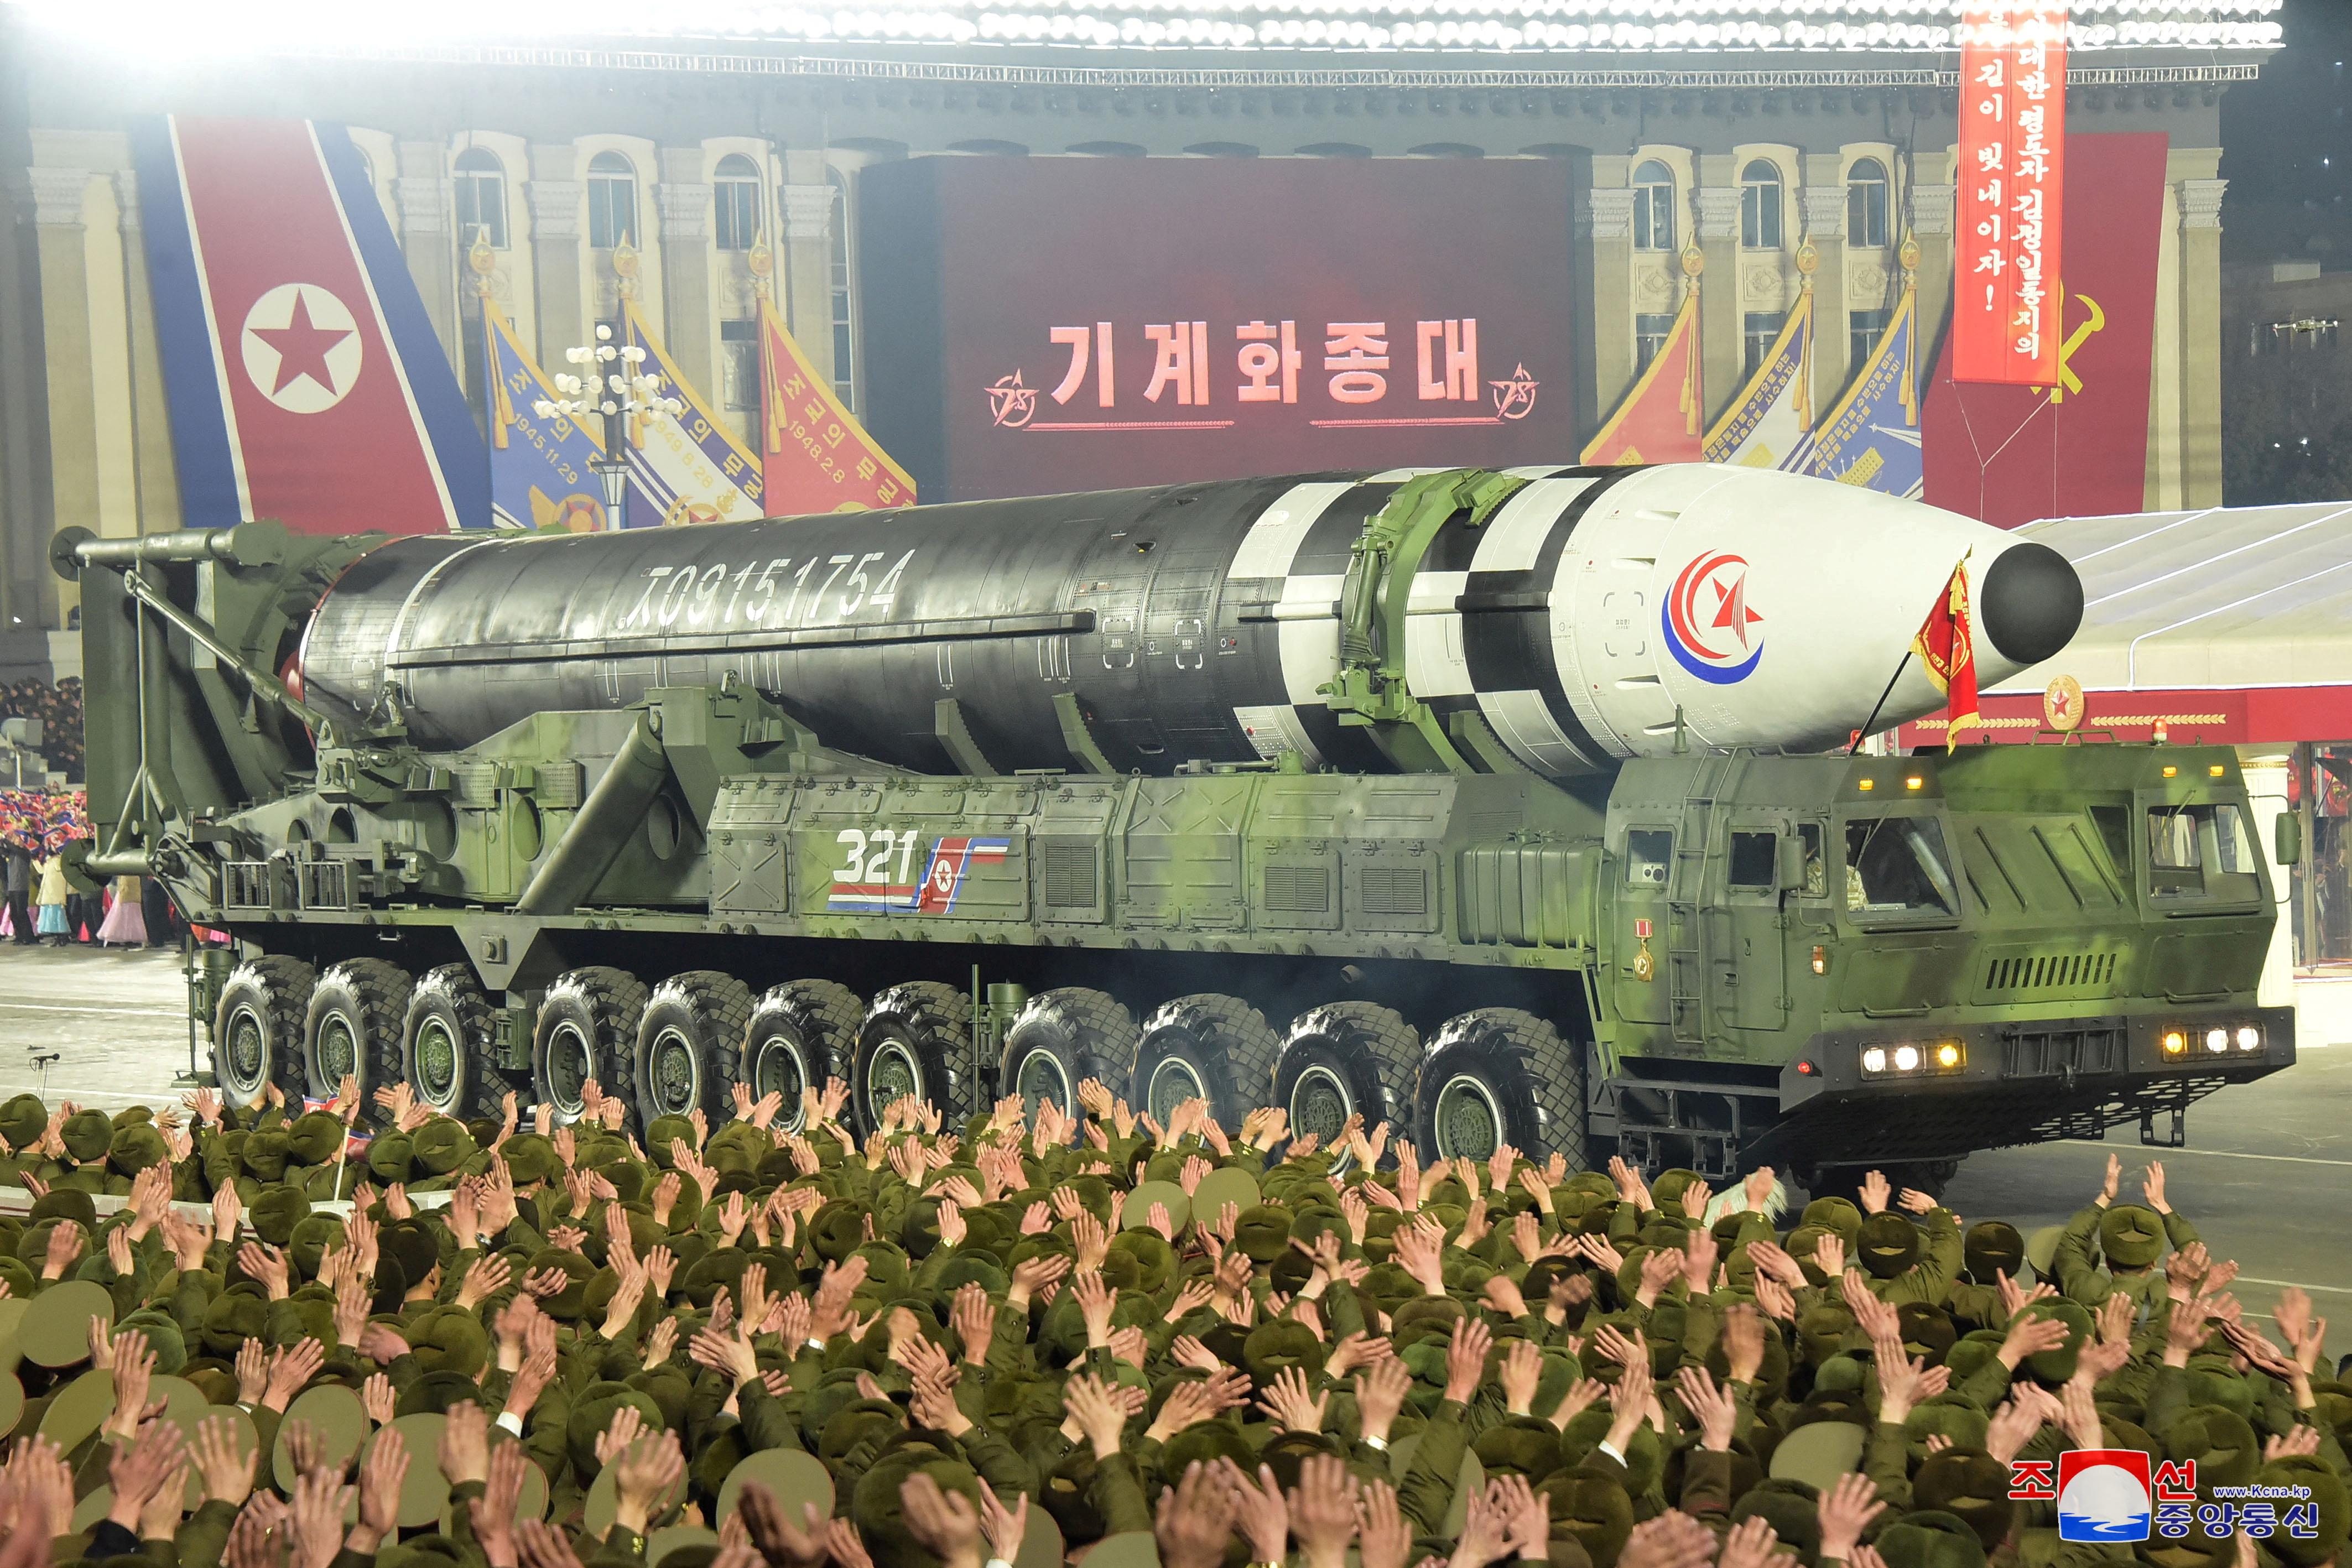 يُعرض صاروخ خلال عرض عسكري بمناسبة الذكرى 75 لتأسيس جيش كوريا الشمالية ، في ساحة كيم إيل سونغ في بيونغ يانغ ، كوريا الشمالية